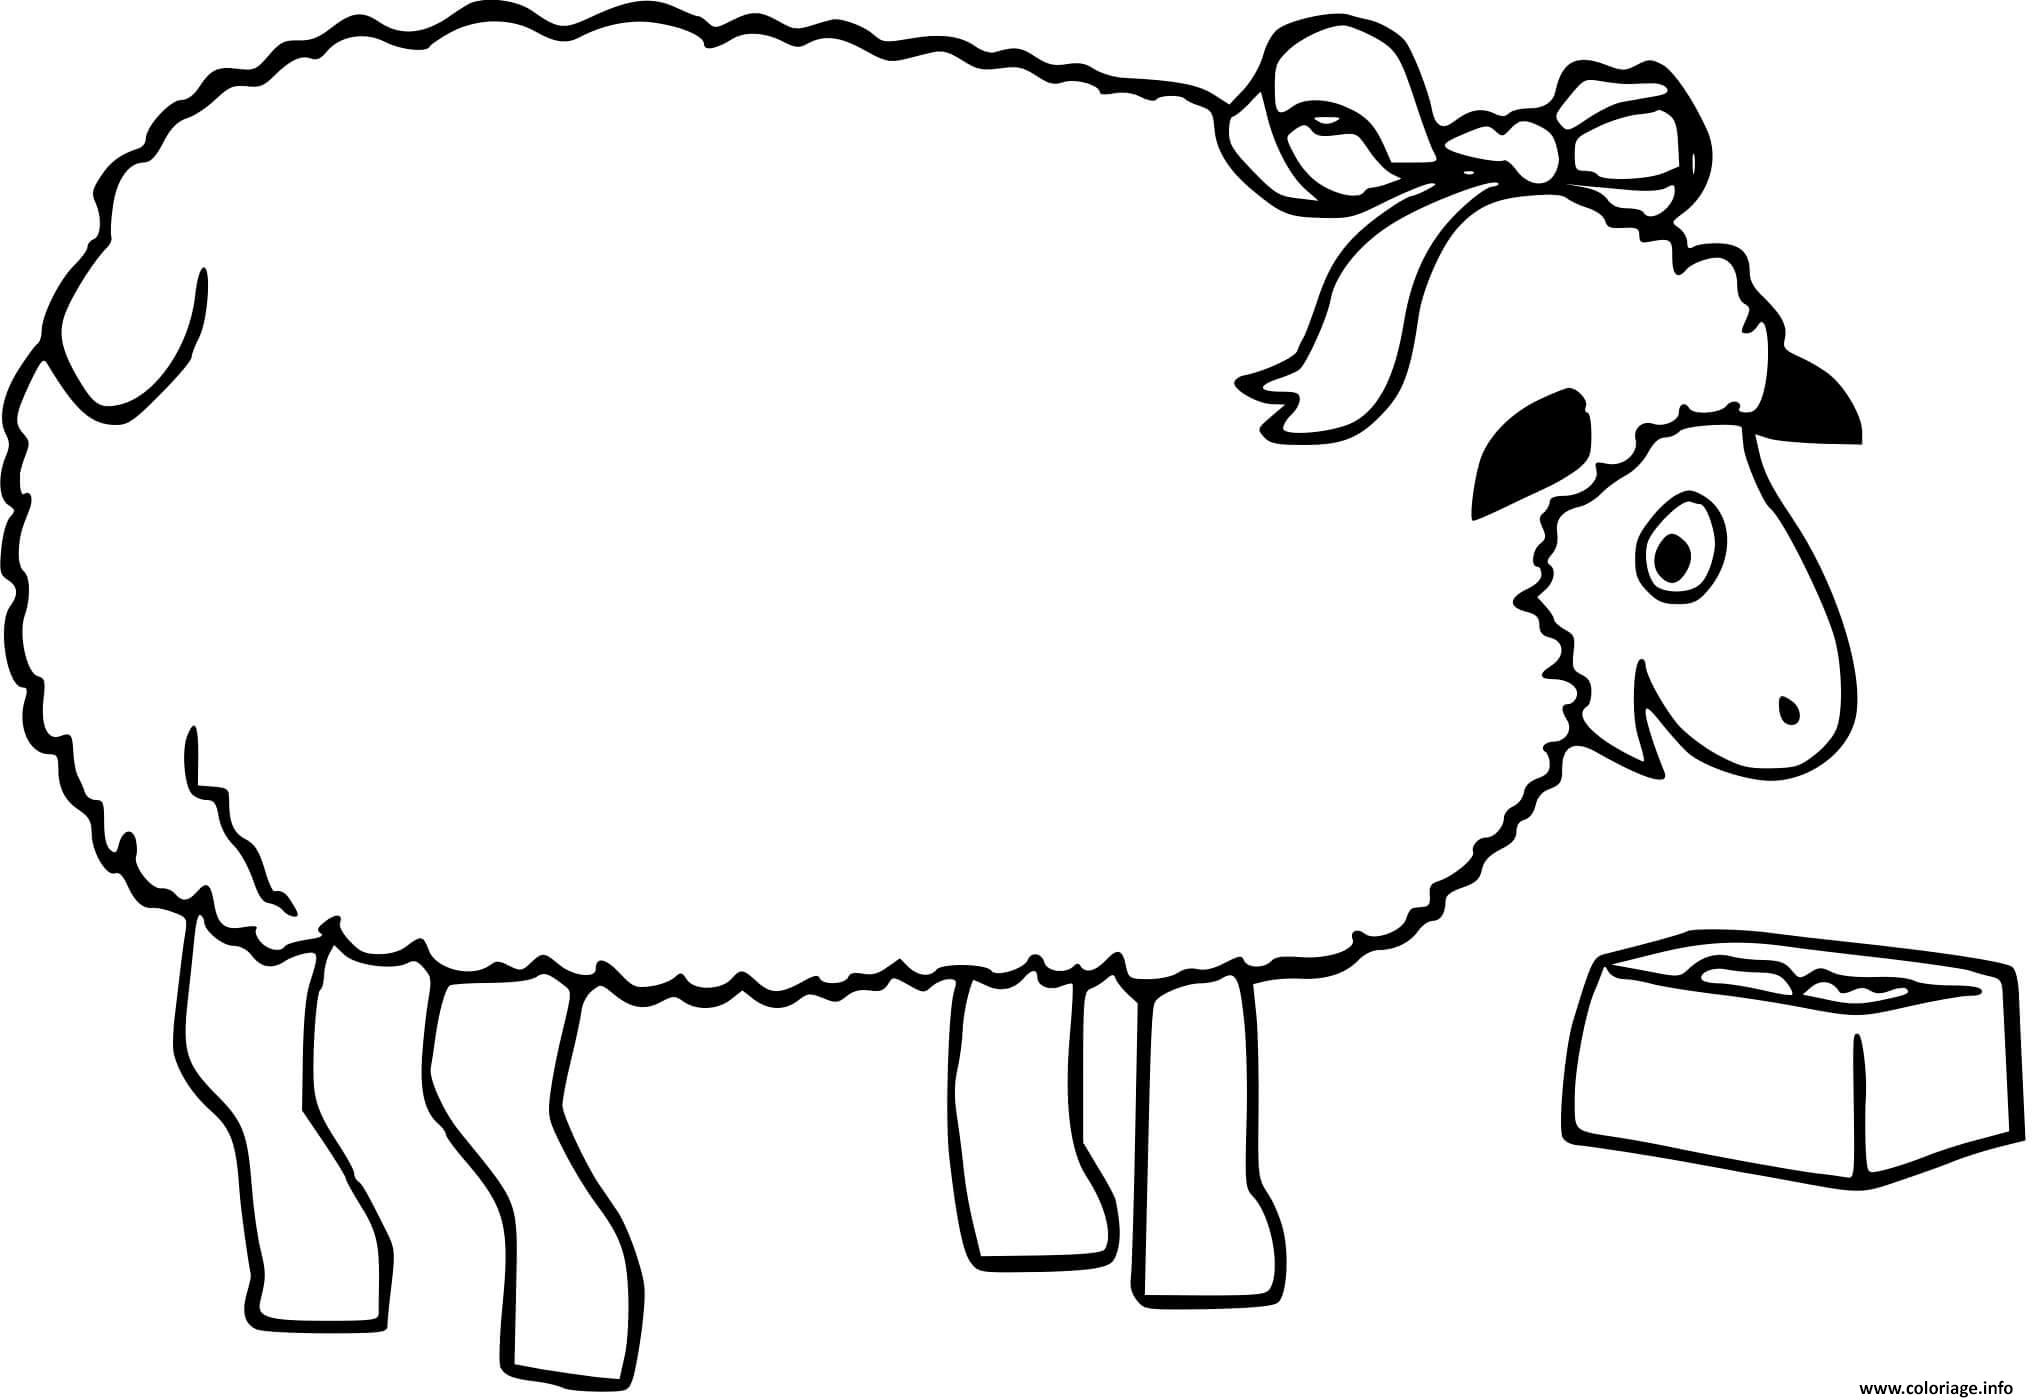 Sheep раскраска для детей